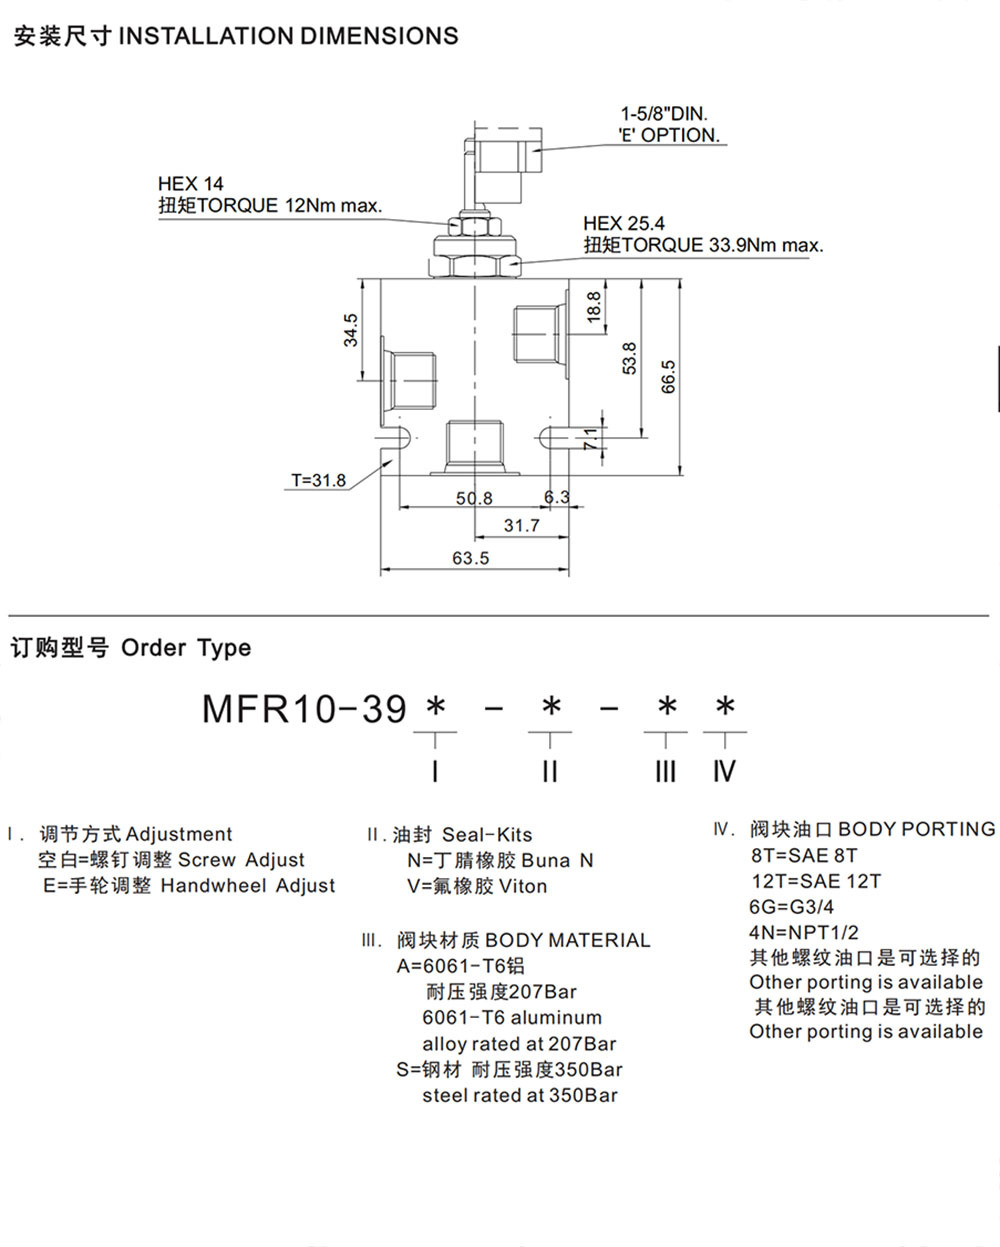 MFR10-39